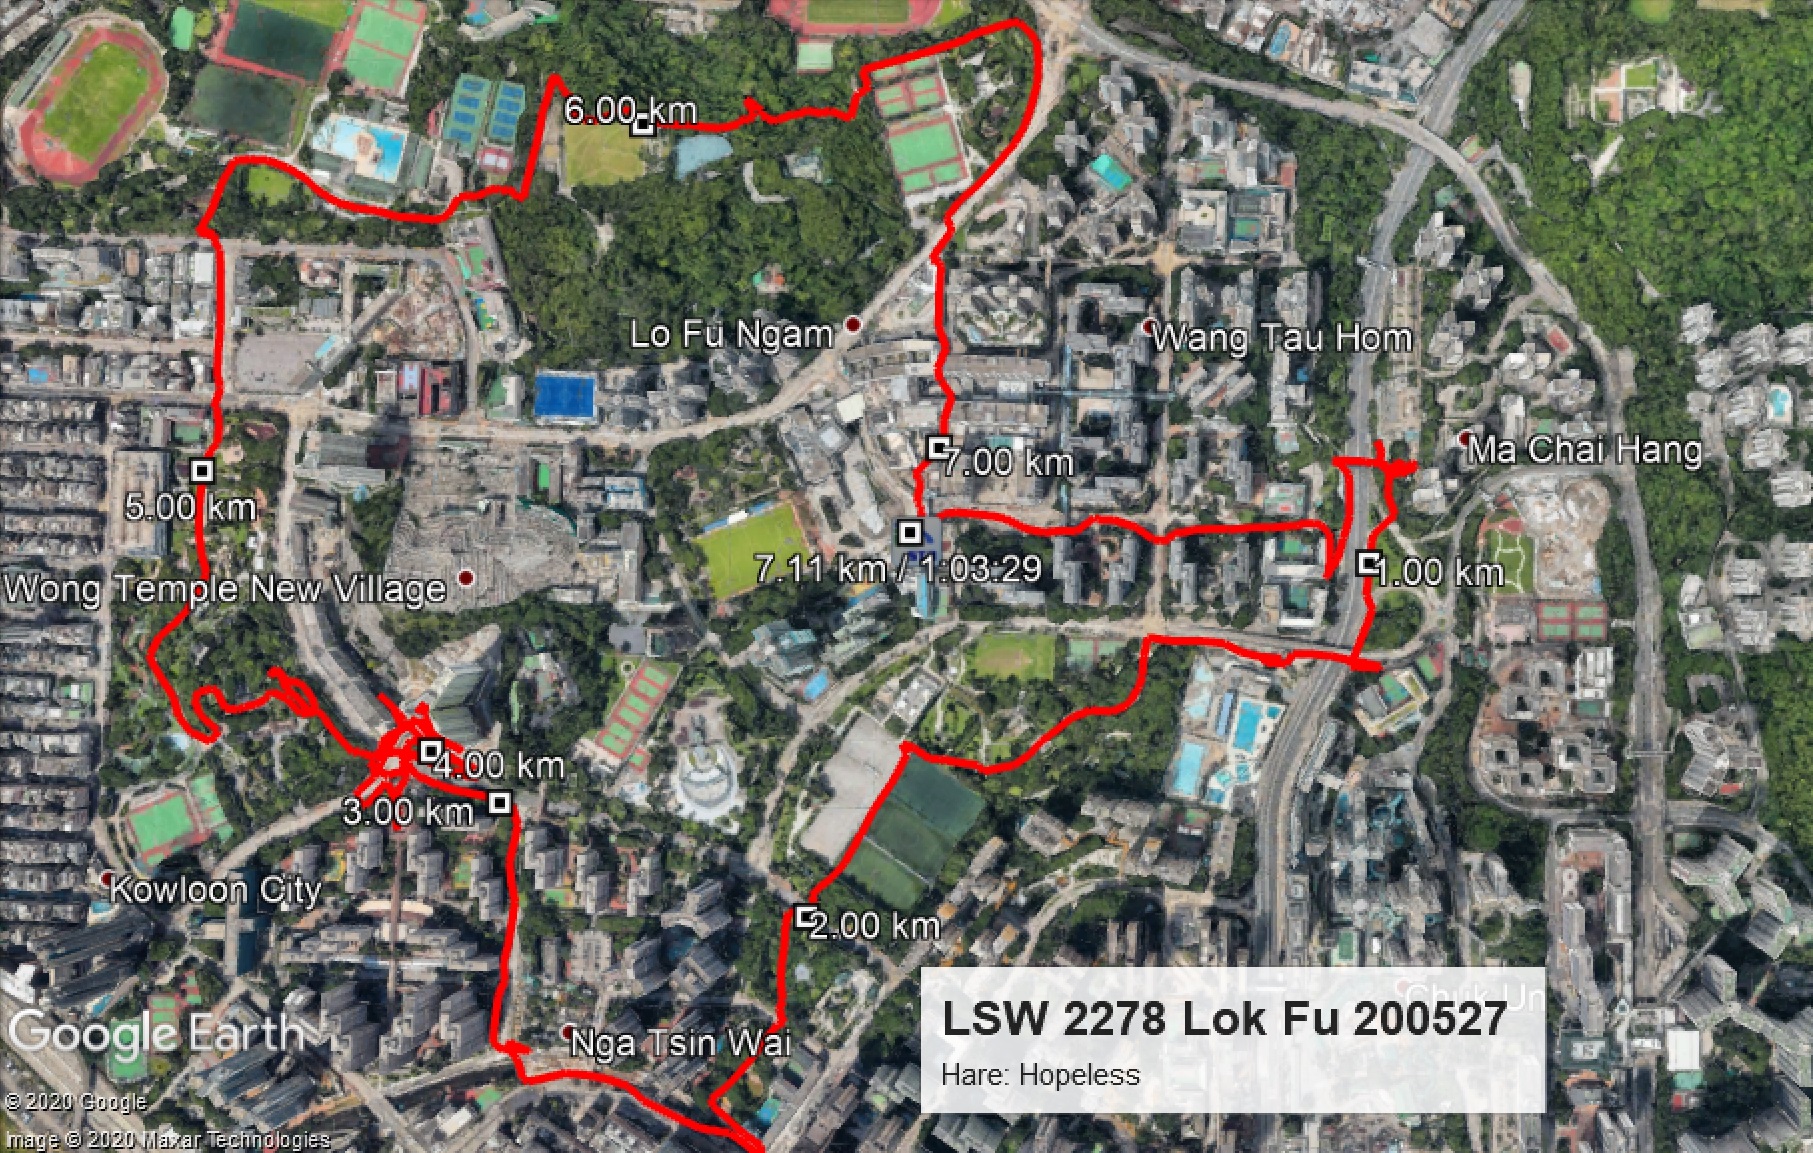 Lok Fu 200527 7.11km 63mins